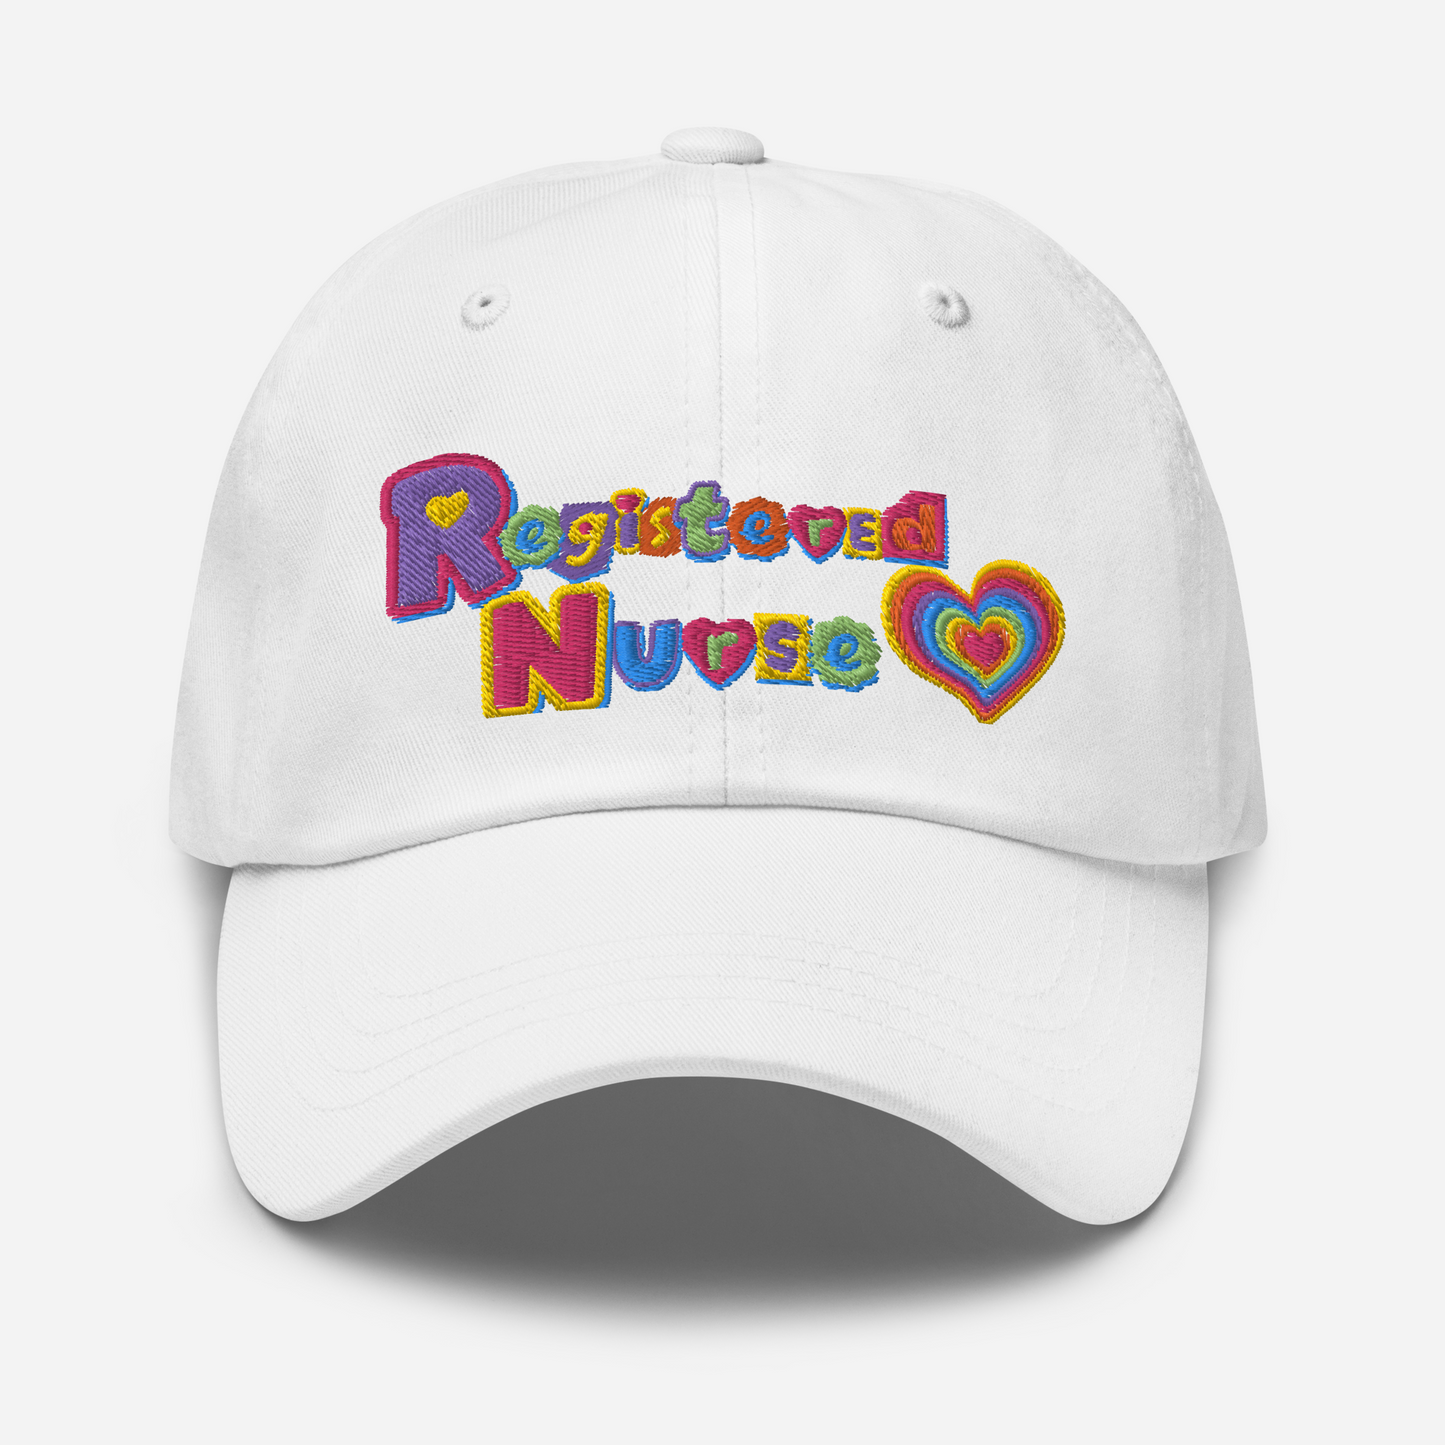 Registered Nurse Hat